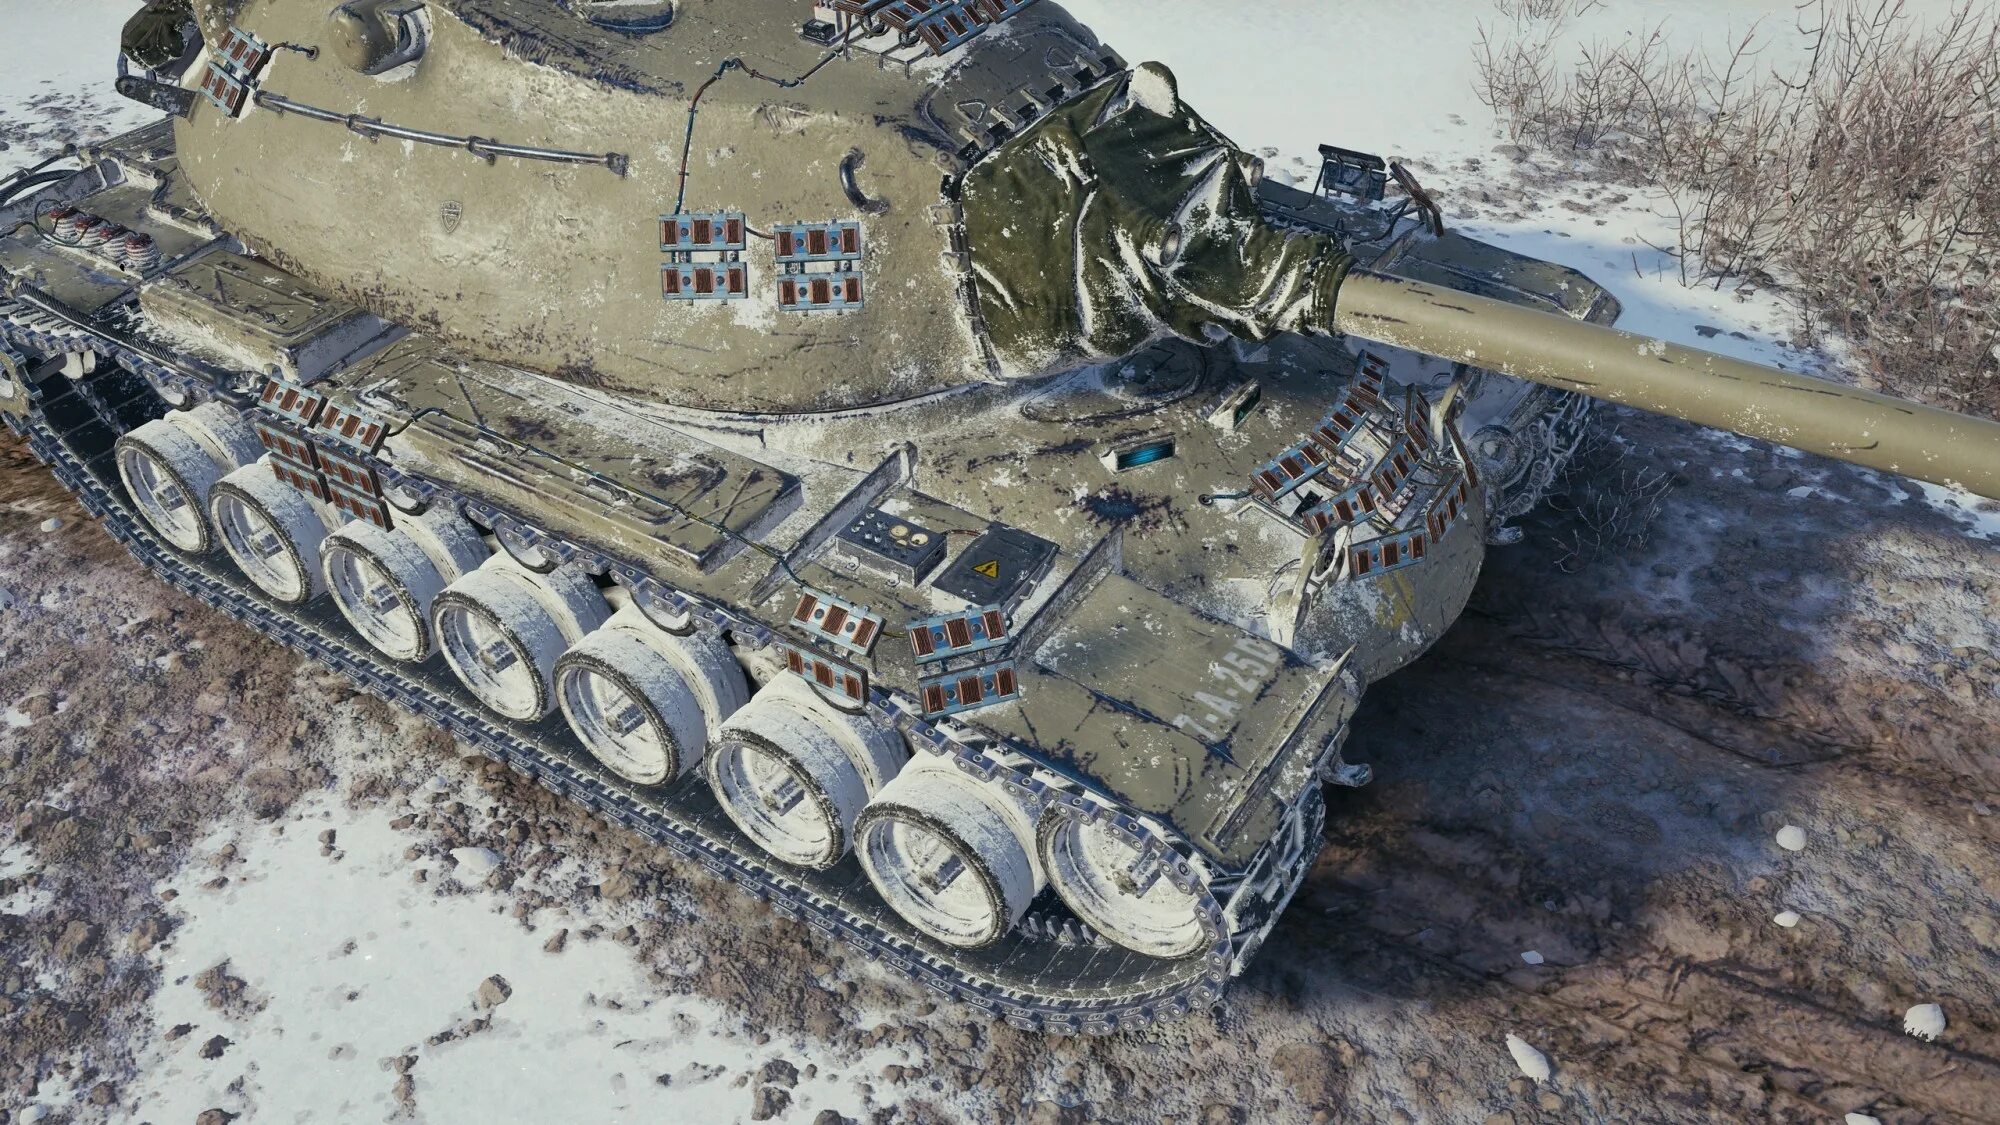 Tanks 13. Неуязвимый танк Мирный-13. Голиаф танк Мирный 13. Ворлд оф танк танки Мирный 13. Т 54 малахит.